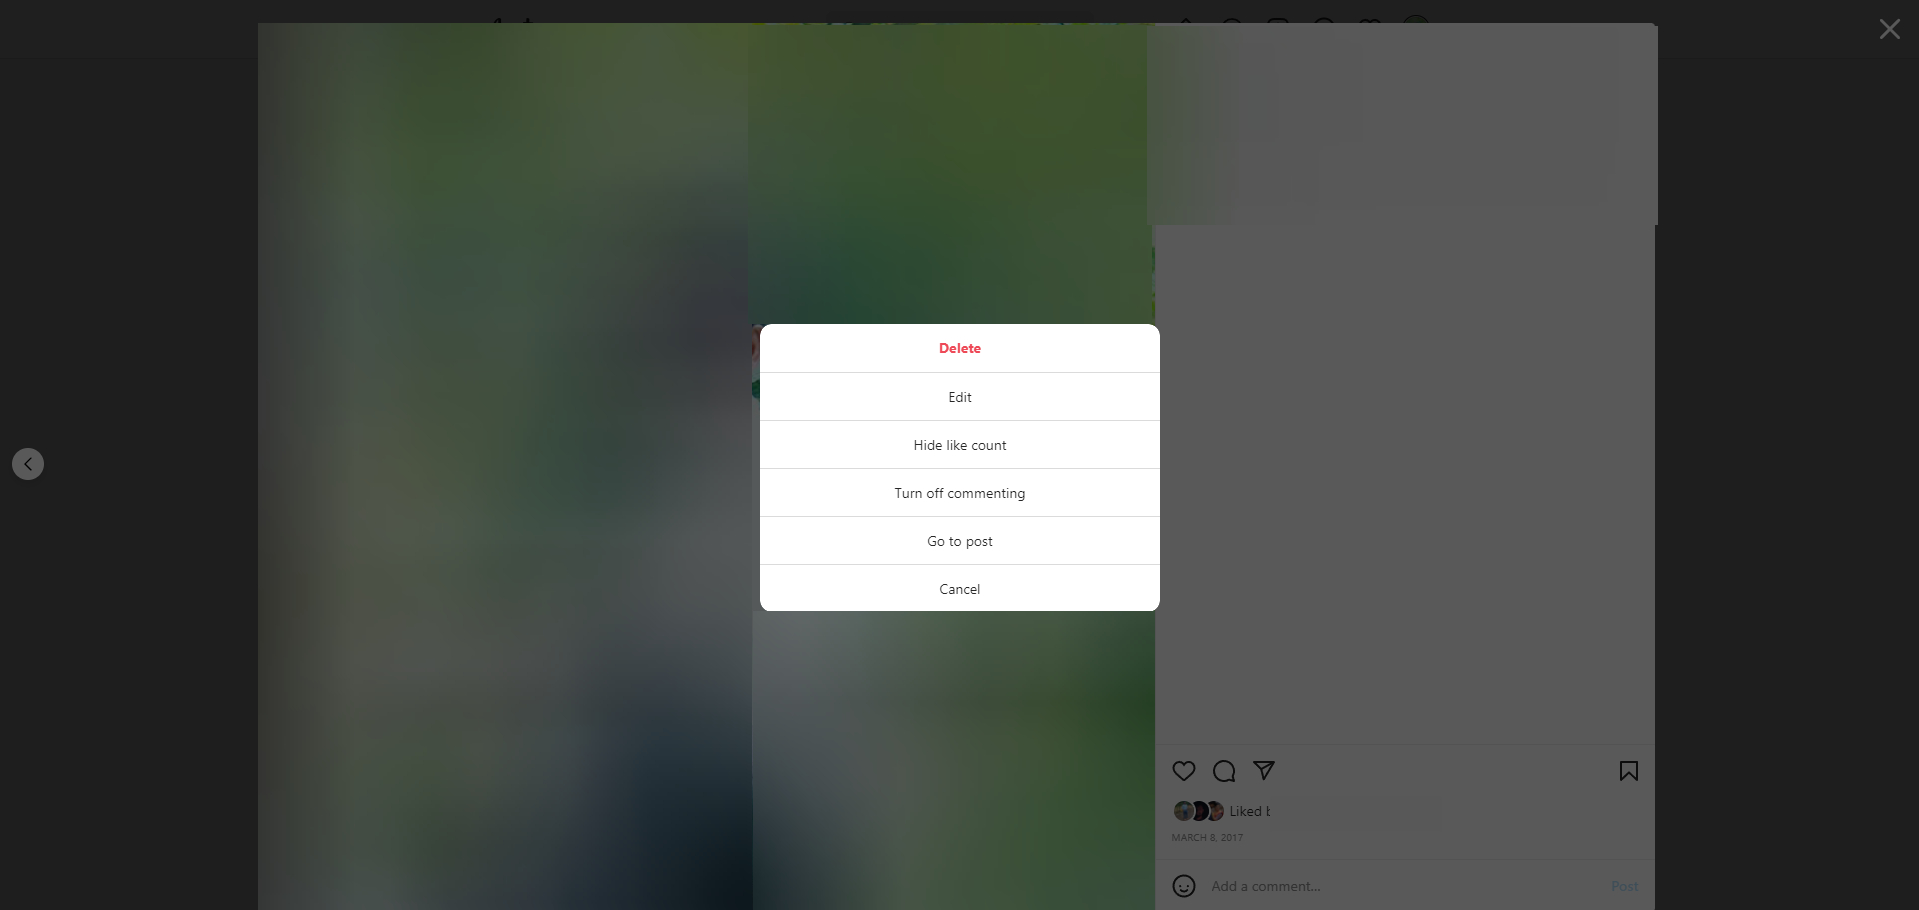 Tap the Delete button to delete photos on Instagram